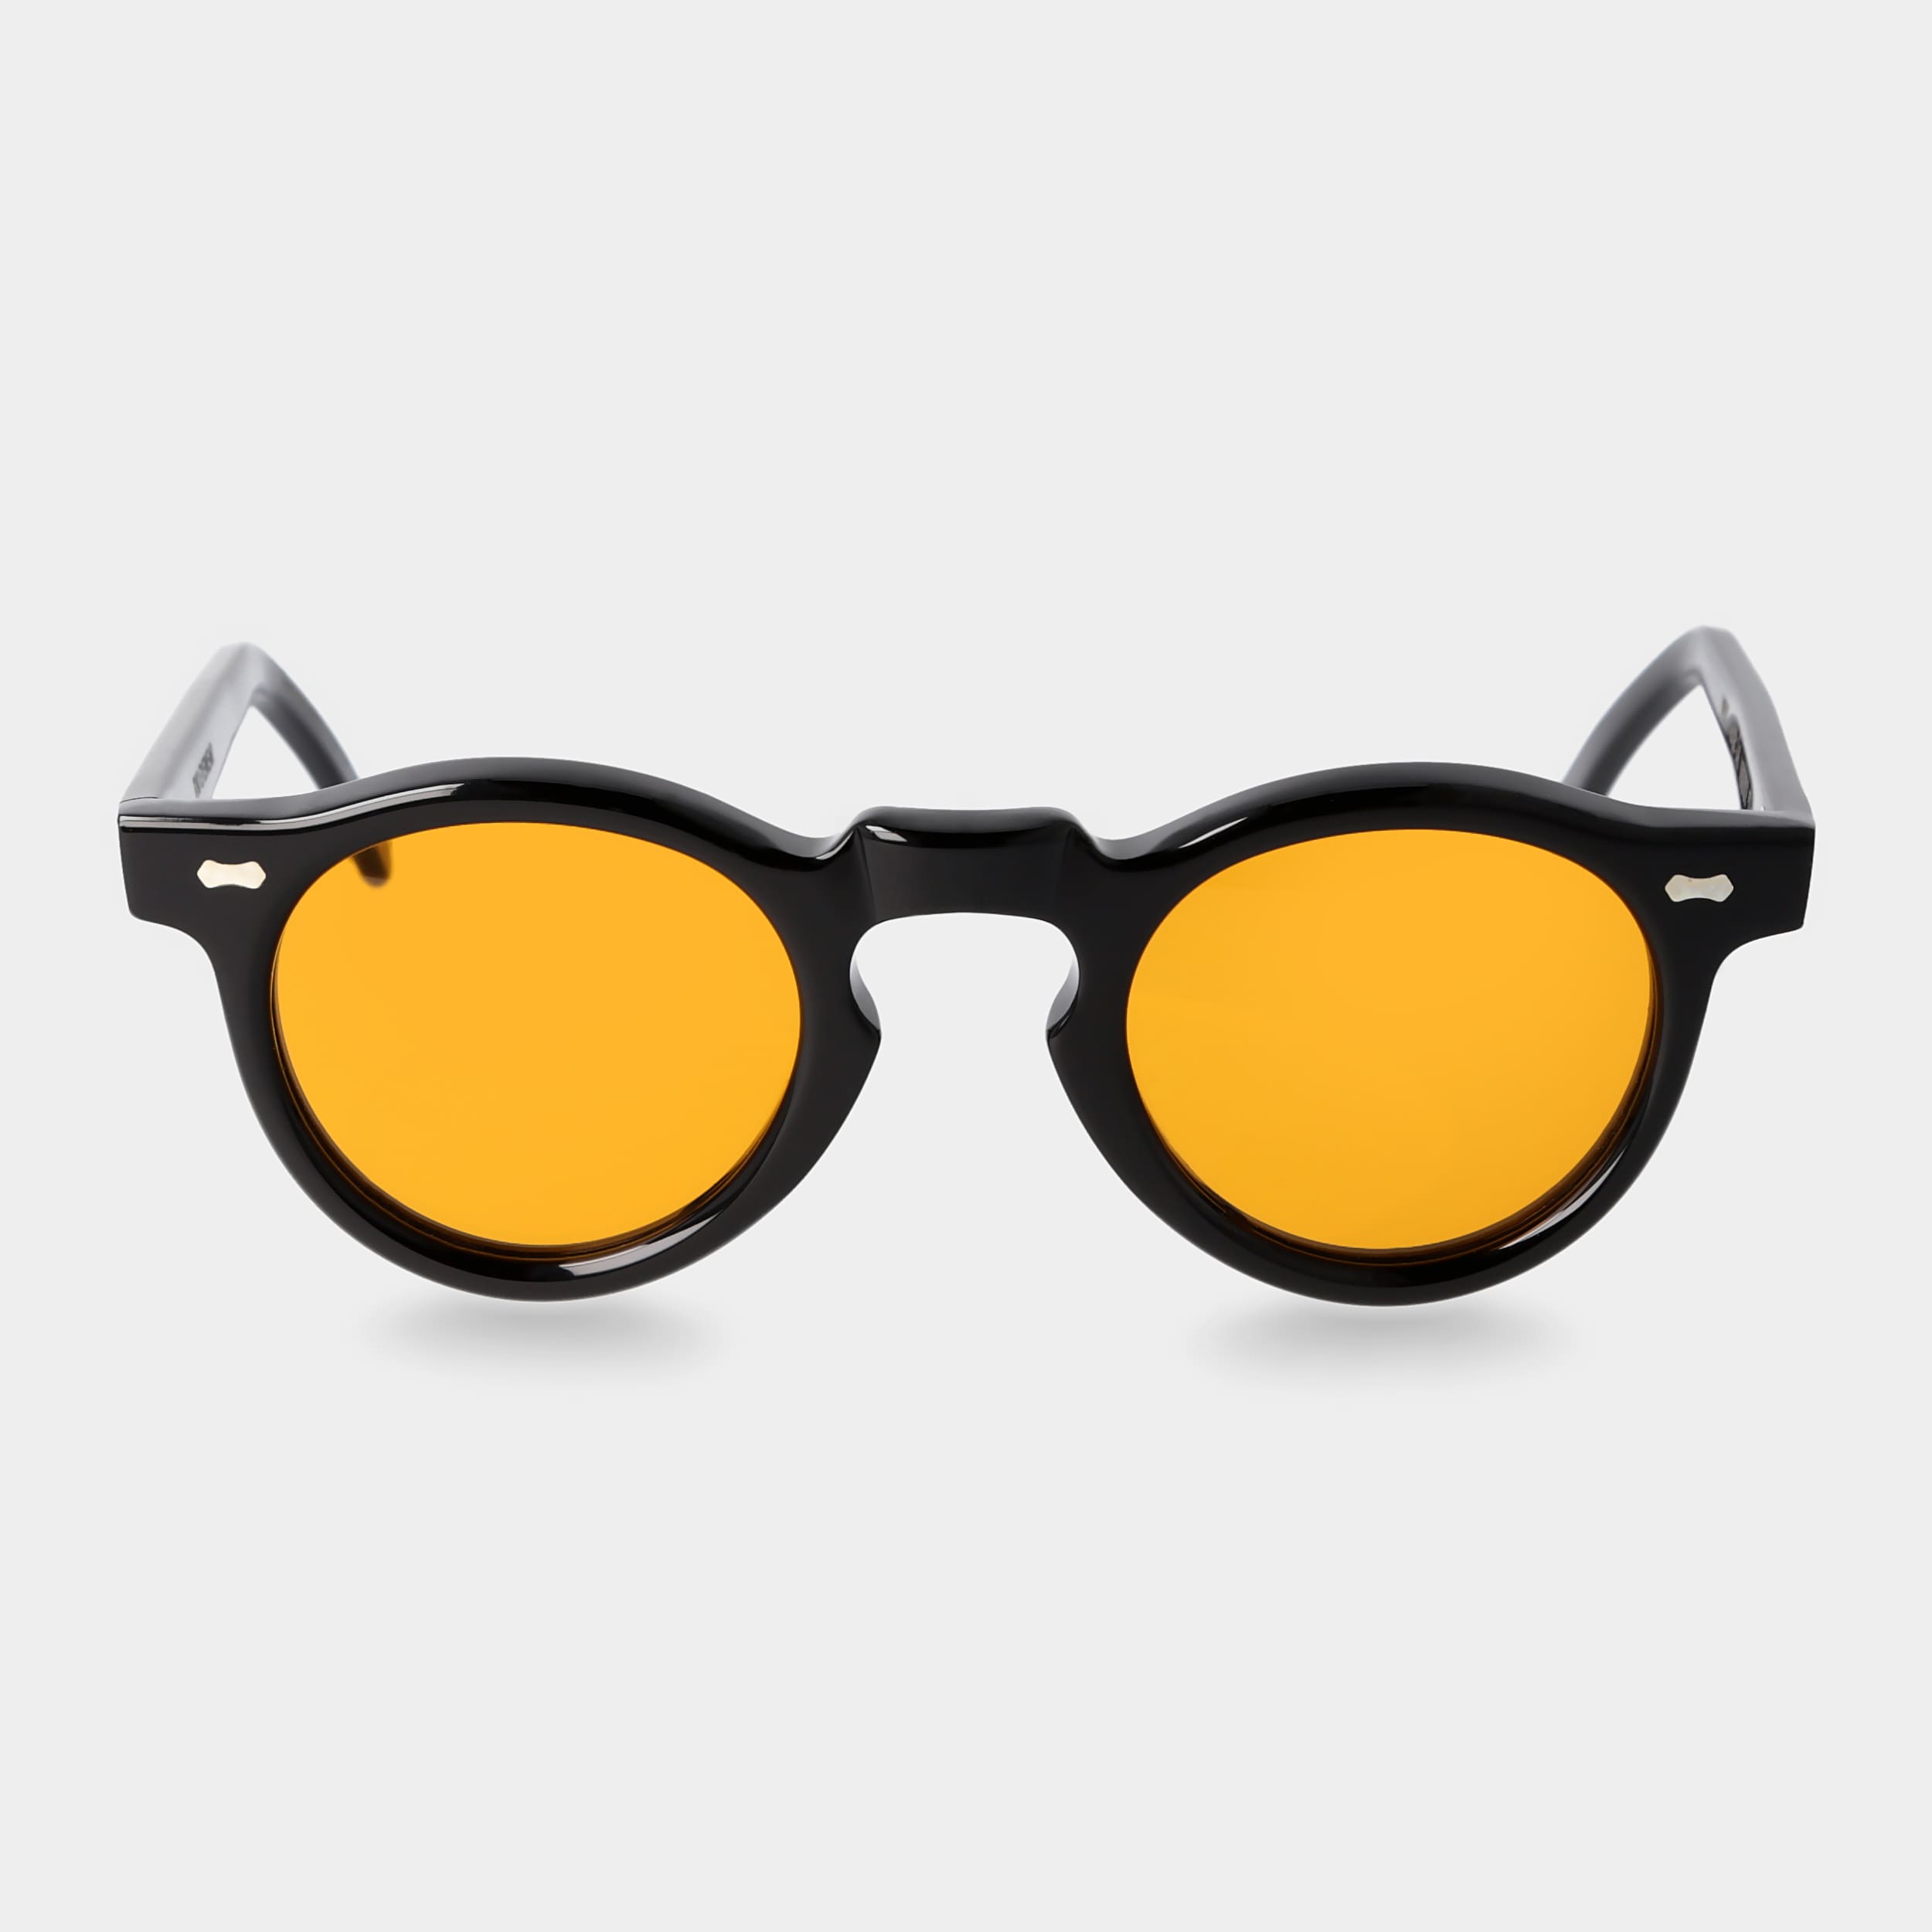 sunglasses-welt-eco-black-orange-sustainable-tbd-eyewear-front